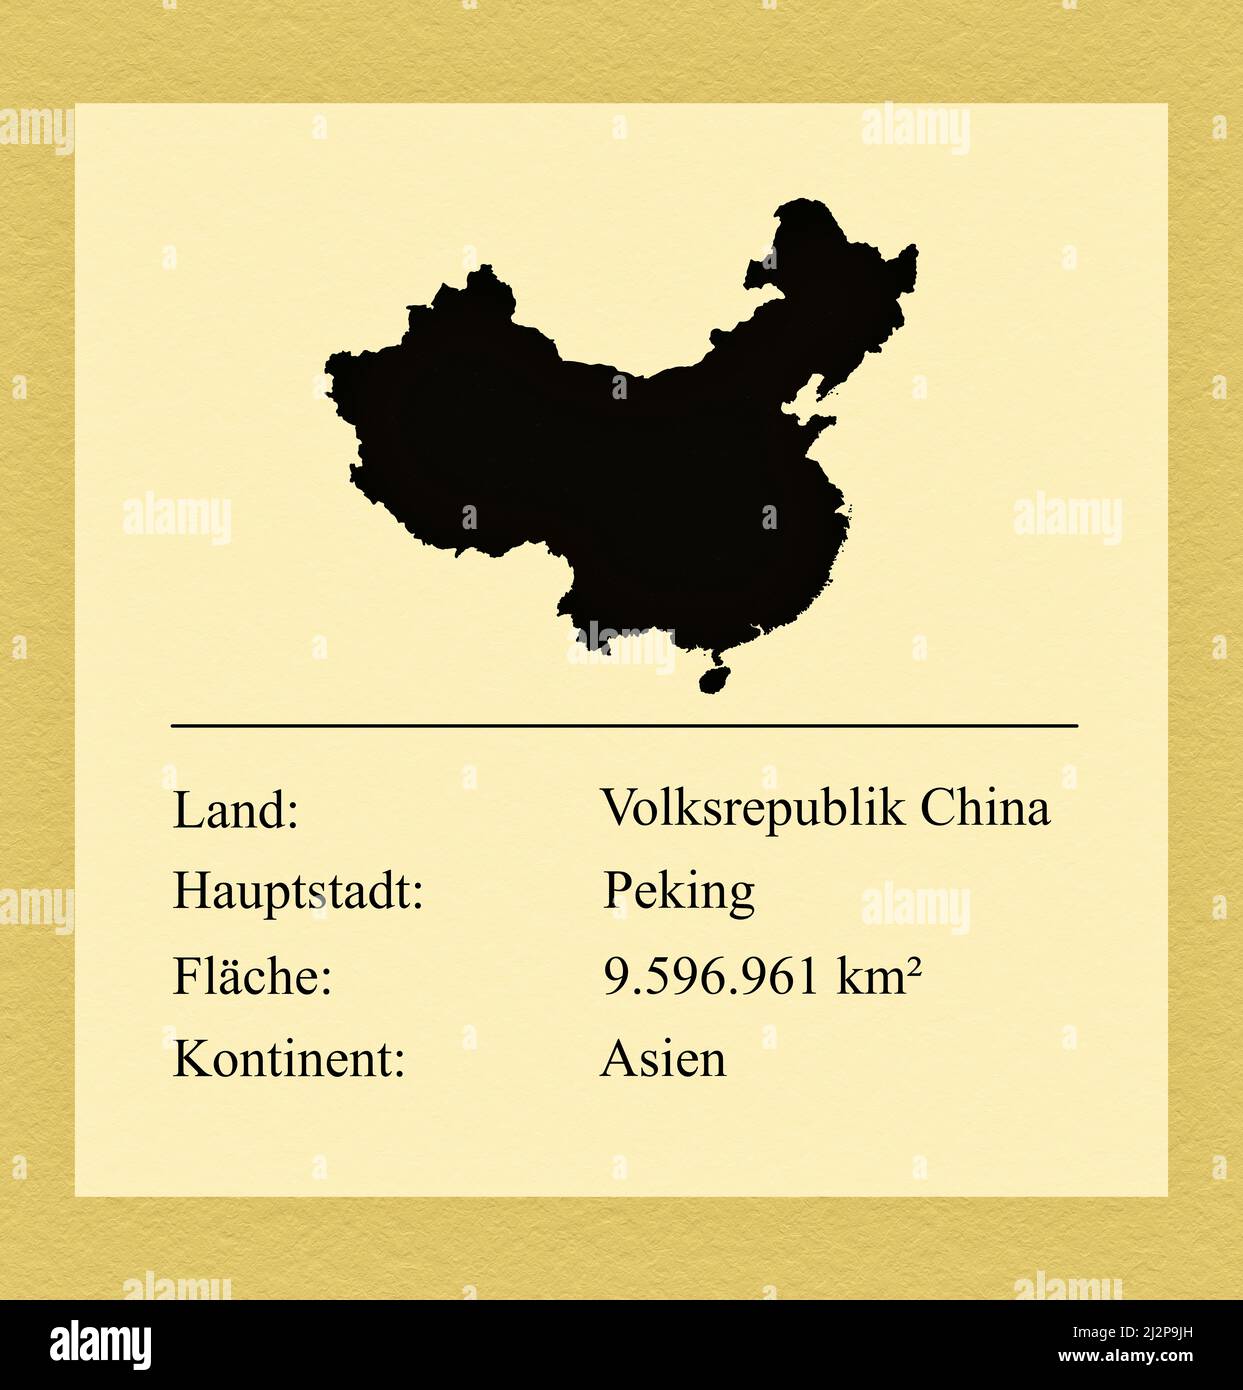 Umrisse des Landes China, darunter ein kleiner Steckbrief mit Ländernamen, Hauptstadt, Fläche und Kontinent Stock Photo